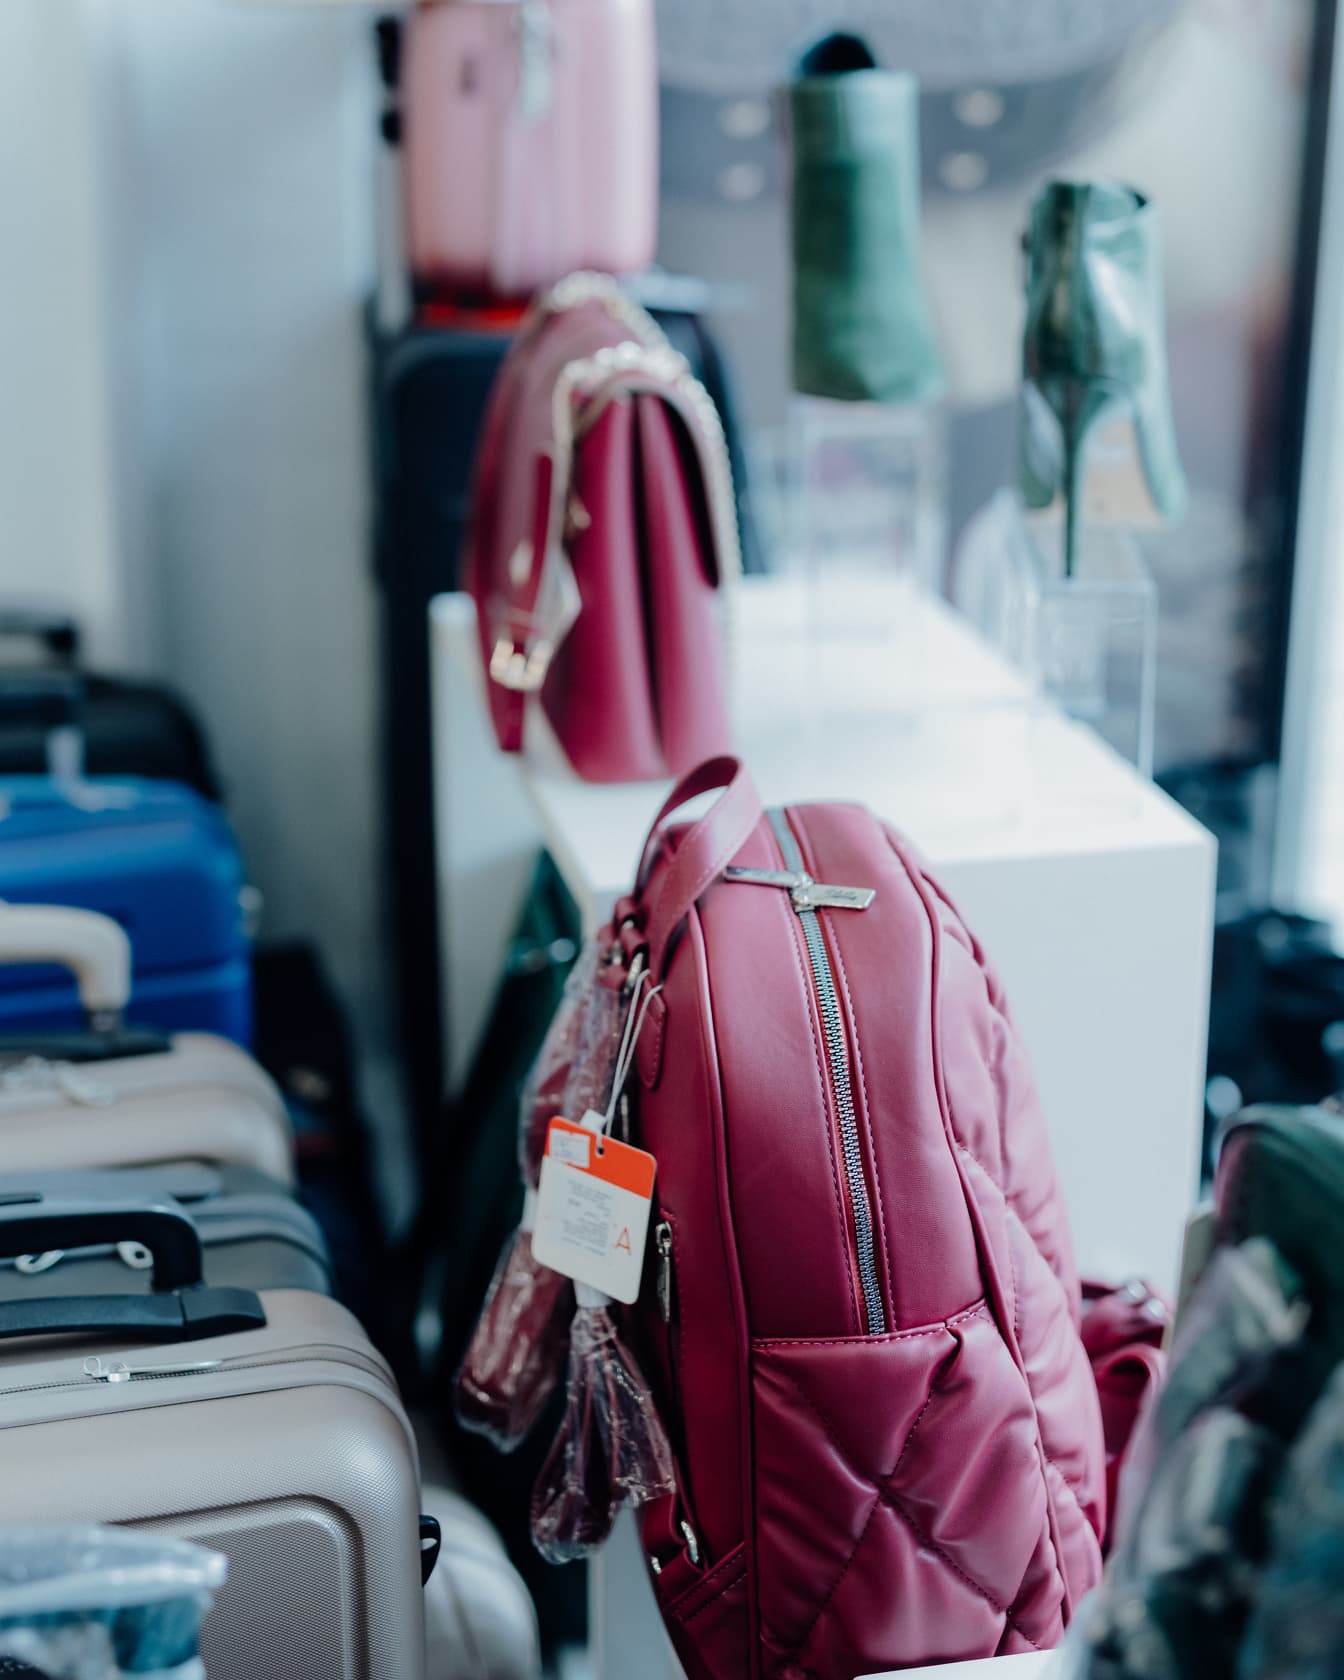 Lyserød fashionabel rygsæk på hylde i butik med andre håndtasker, der tilbydes til salg